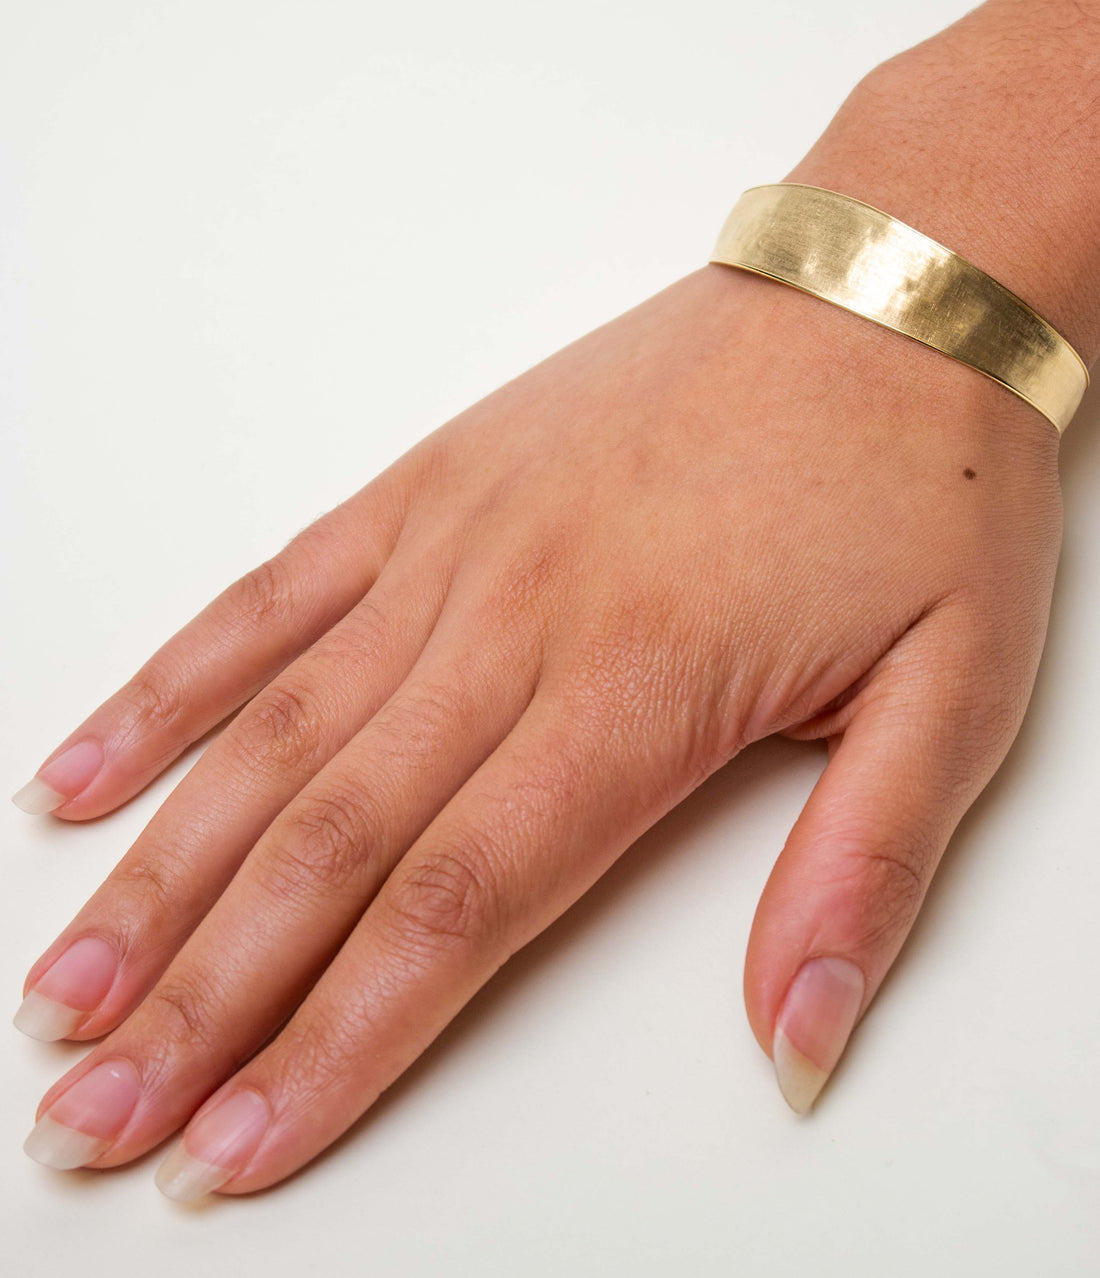 Statement Curved Diamond + 18k Gold Bangle Bracelet | 18k gold bangle, Gold  bangle bracelet, Diamond bangles bracelet